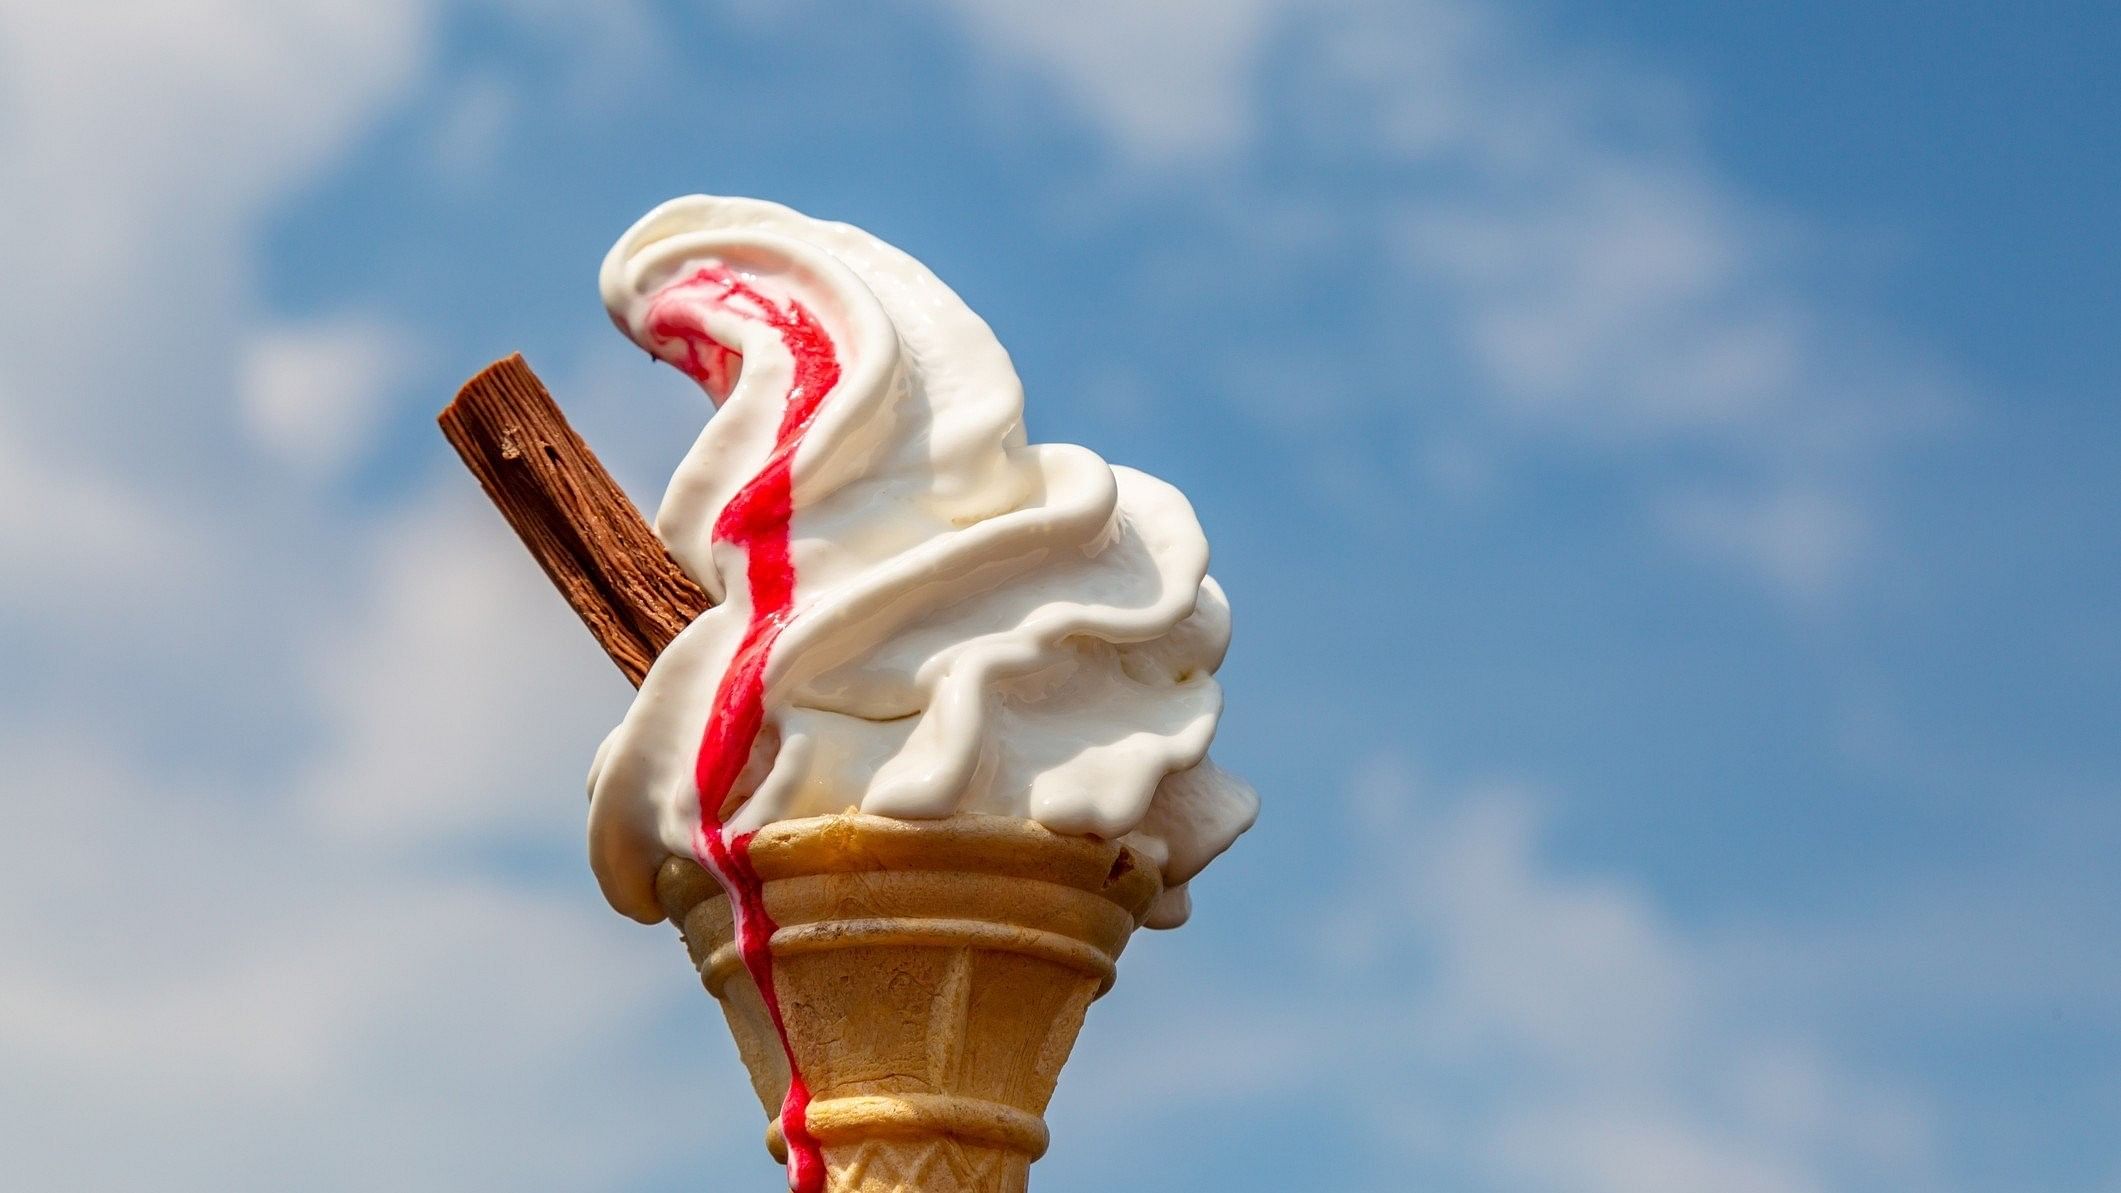 <div class="paragraphs"><p>Representative image of an ice-cream cone</p></div>